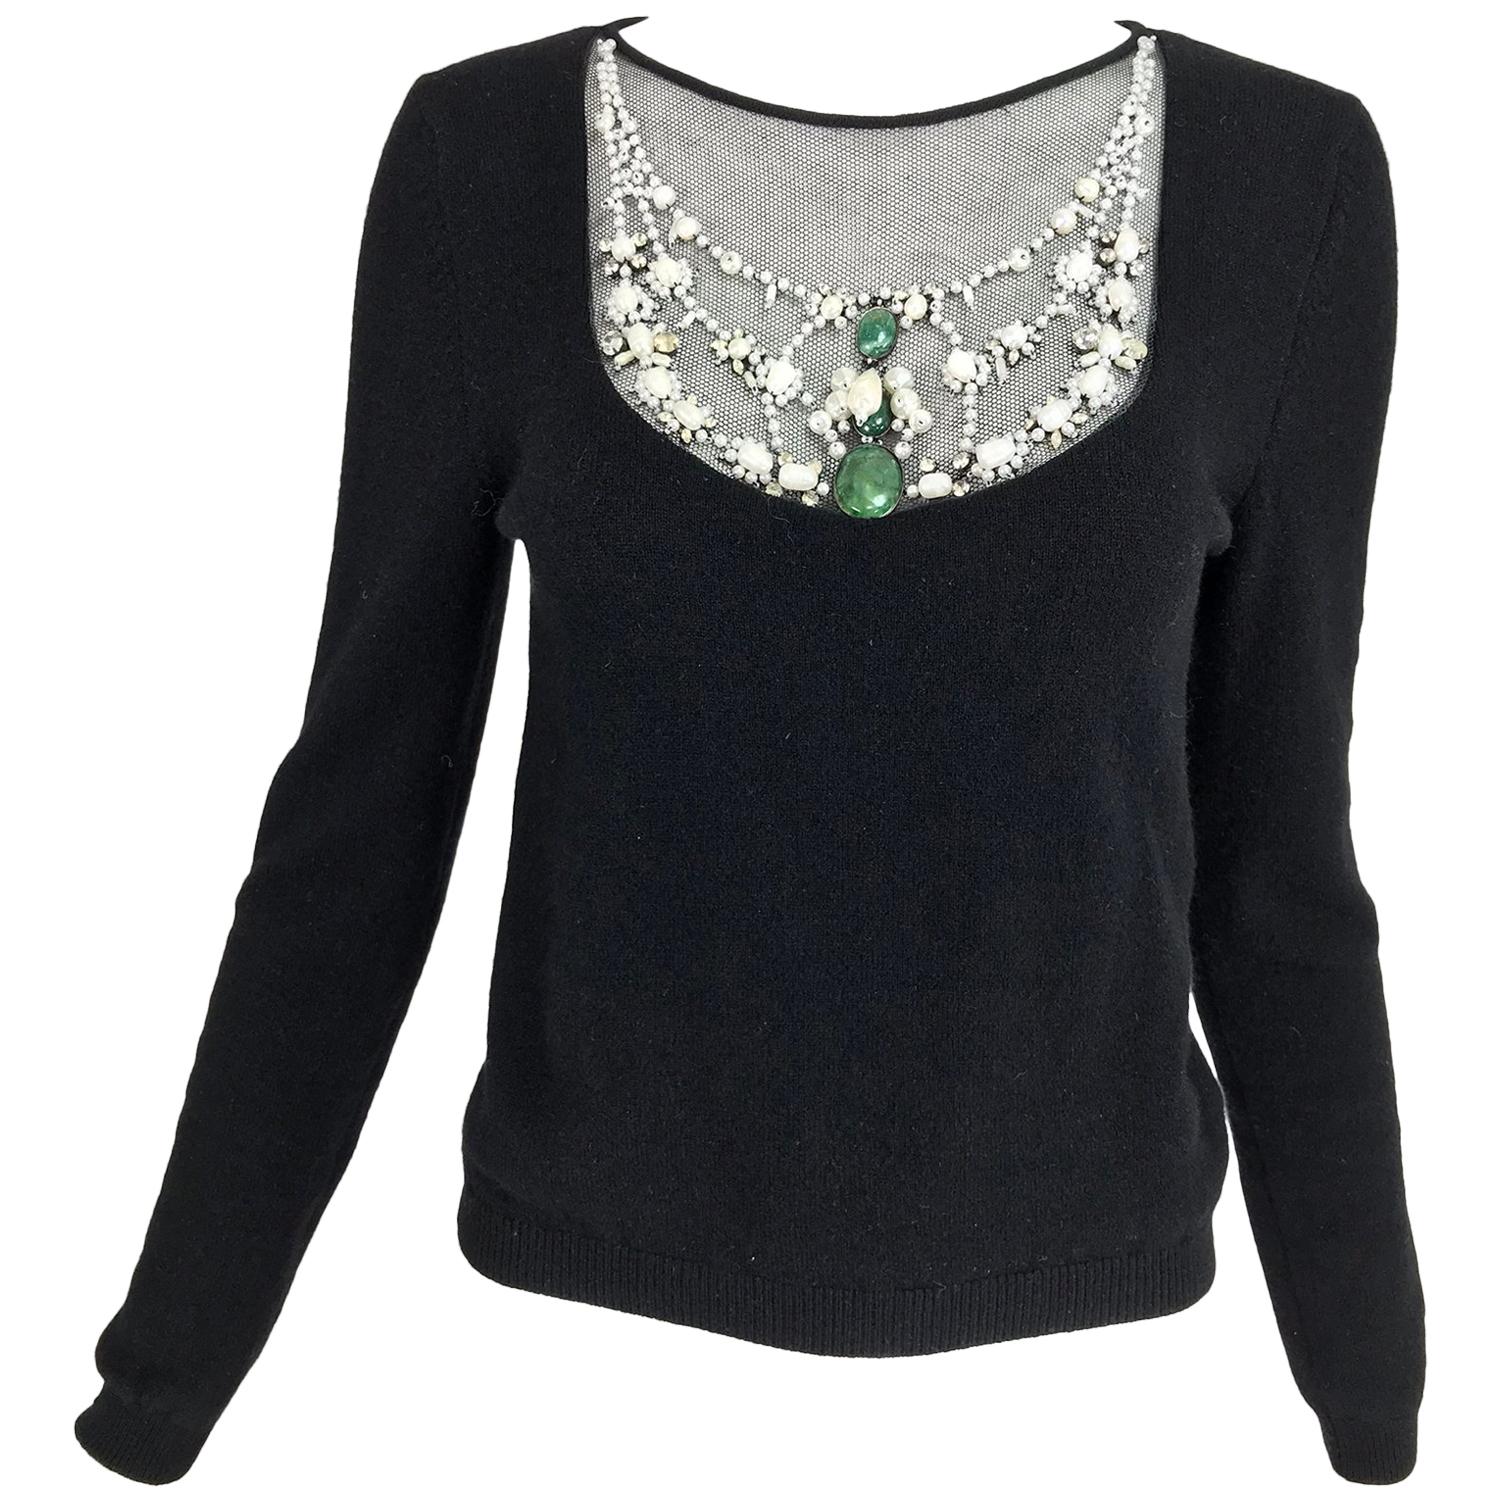 Oscar de la Renta jewel decorated neckline black sweater